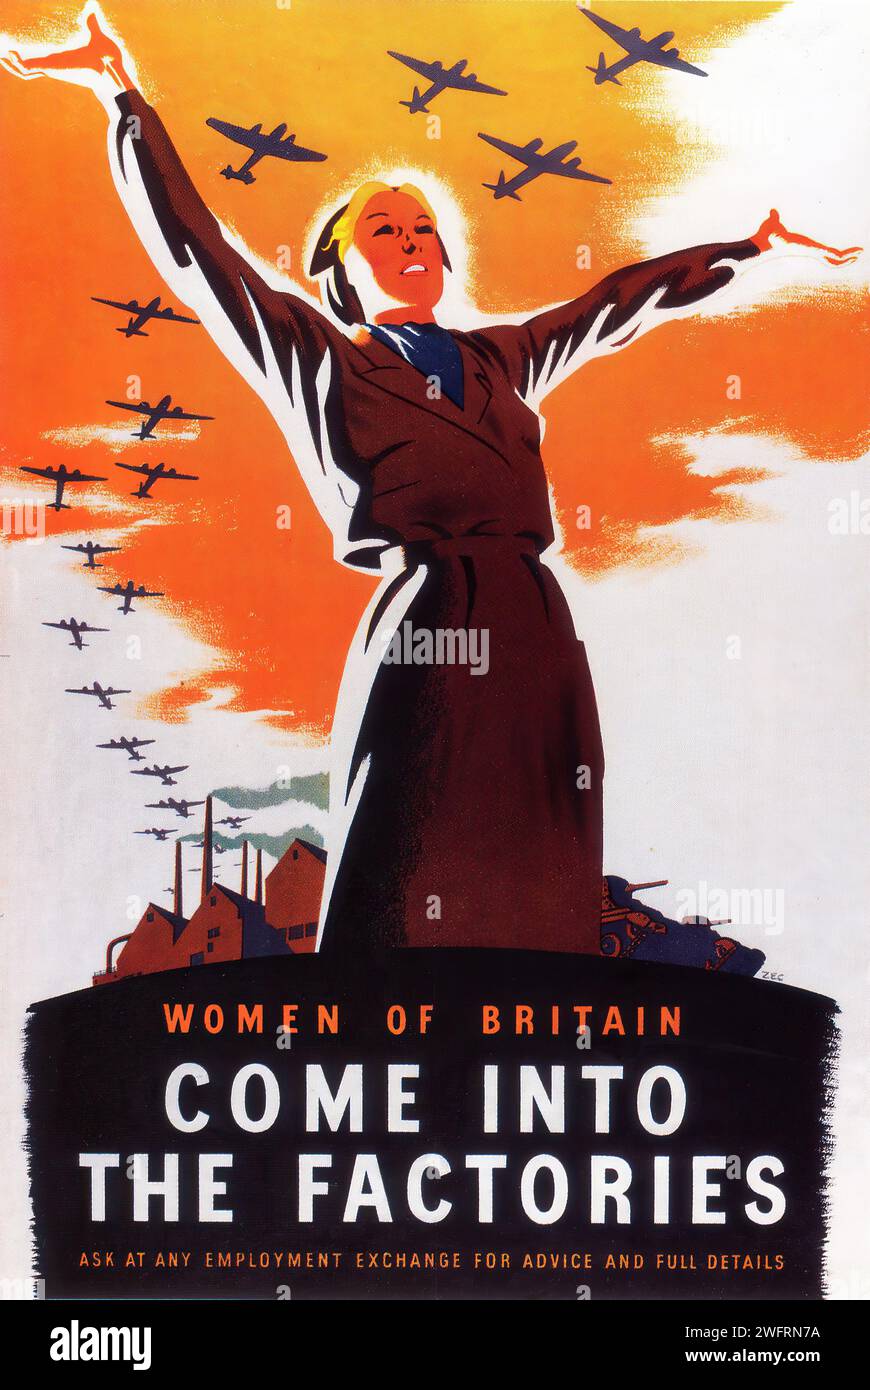 «LES FEMMES DE GRANDE-BRETAGNE VIENNENT DANS LES USINES DEMANDER À N'IMPORTE QUEL ÉCHANGE D'EMPLOI POUR DES CONSEILS ET DES DÉTAILS COMPLETS» | VINTAGE BRITISH ADVERTISING. Cette affiche de 1941 est une pièce emblématique de l'histoire britannique de la Seconde Guerre mondiale, exhortant les femmes à rejoindre la main-d'œuvre dans les usines. L'image représente une femme aux bras tendus, symbolisant l'autonomisation, sur fond d'avions de chasse et de cheminées d'usine, reflétant l'effort de guerre industriel. Le style évoque la propagande en temps de guerre, avec des couleurs audacieuses et une composition dynamique pour inspirer et motiver le spectateur. Banque D'Images